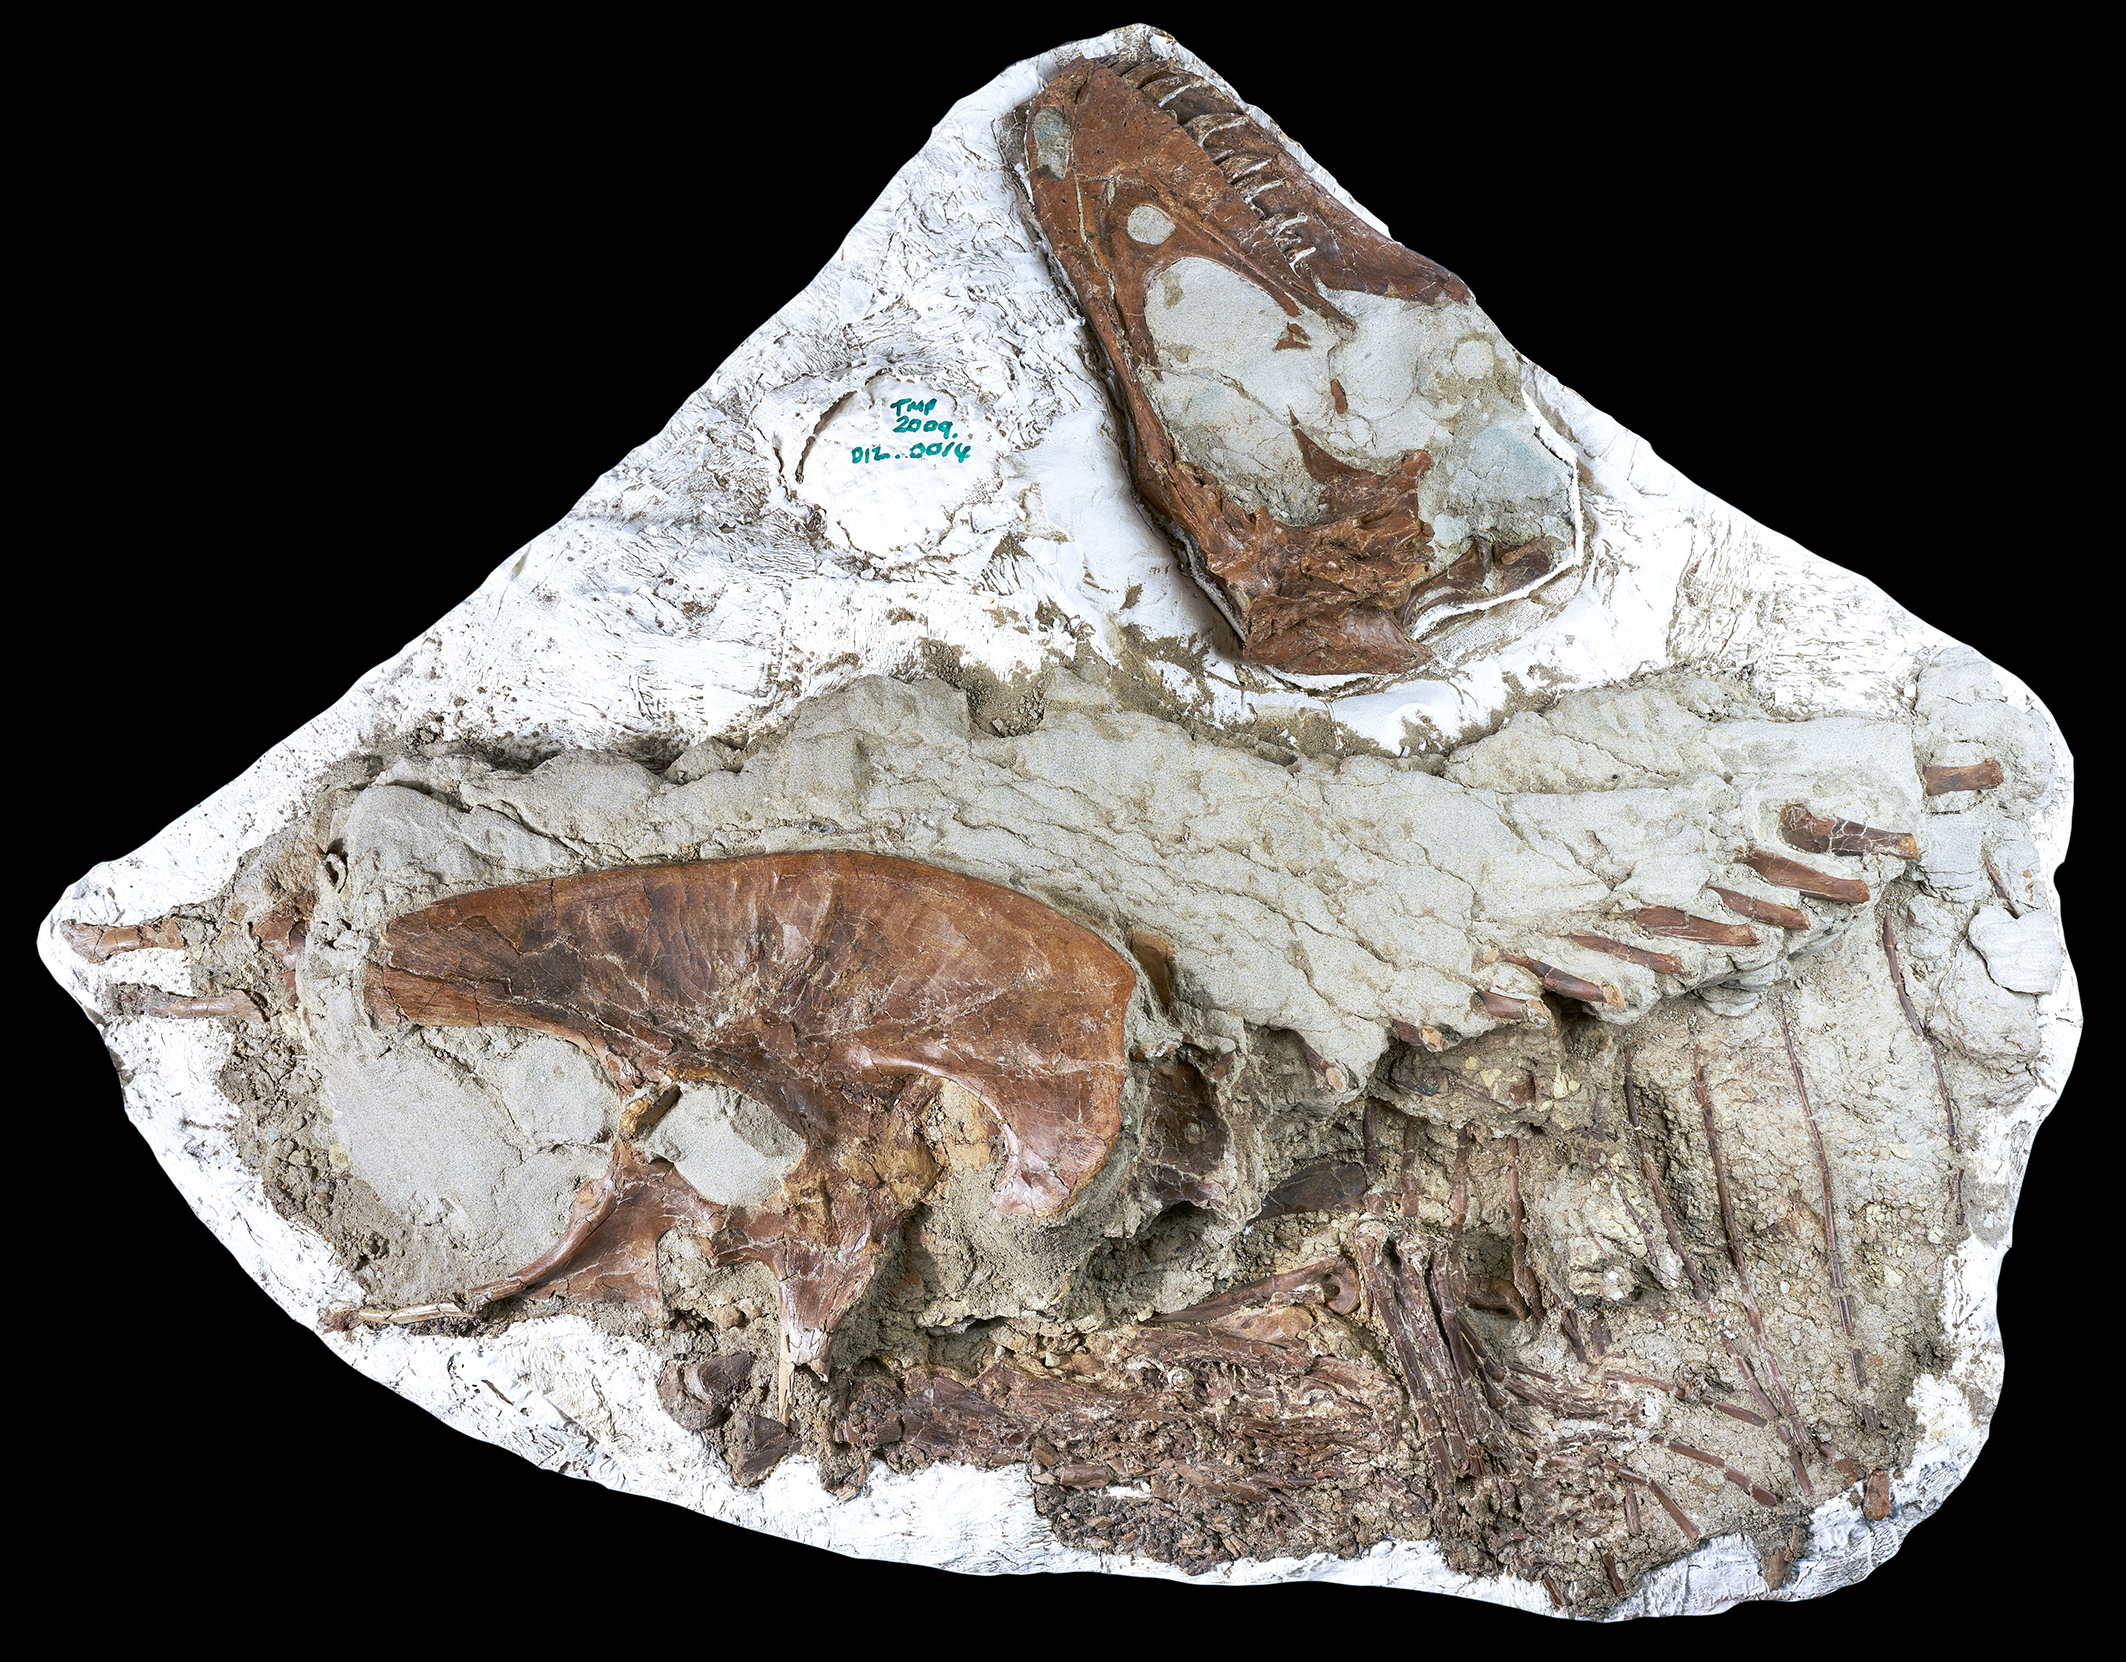 恐竜化石、胃の中に獲物 ティラノサウルス科で「世界初」 - 産経ニュース